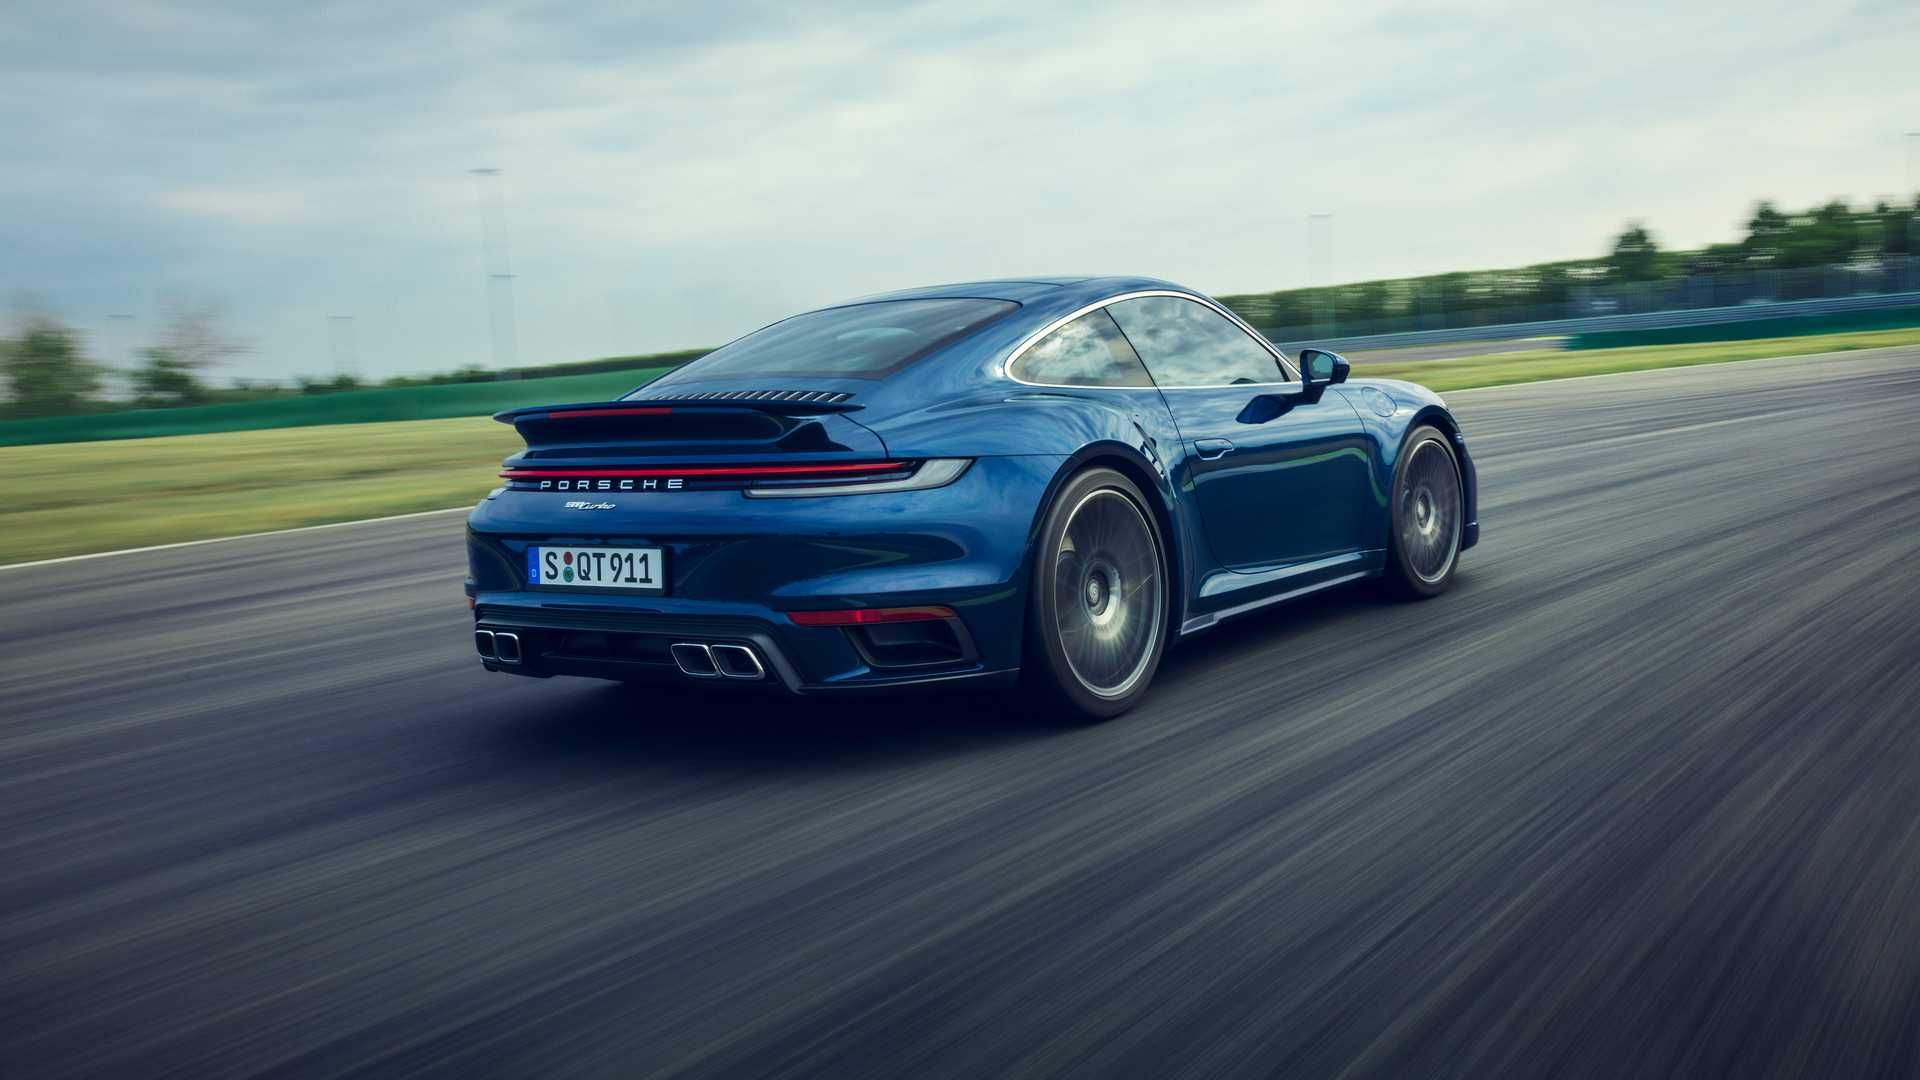 نمای عقب کوپه پورشه 911 توربو 2021 / 2021 Porsche 911 Turbo در پیست و جاده آسفالت